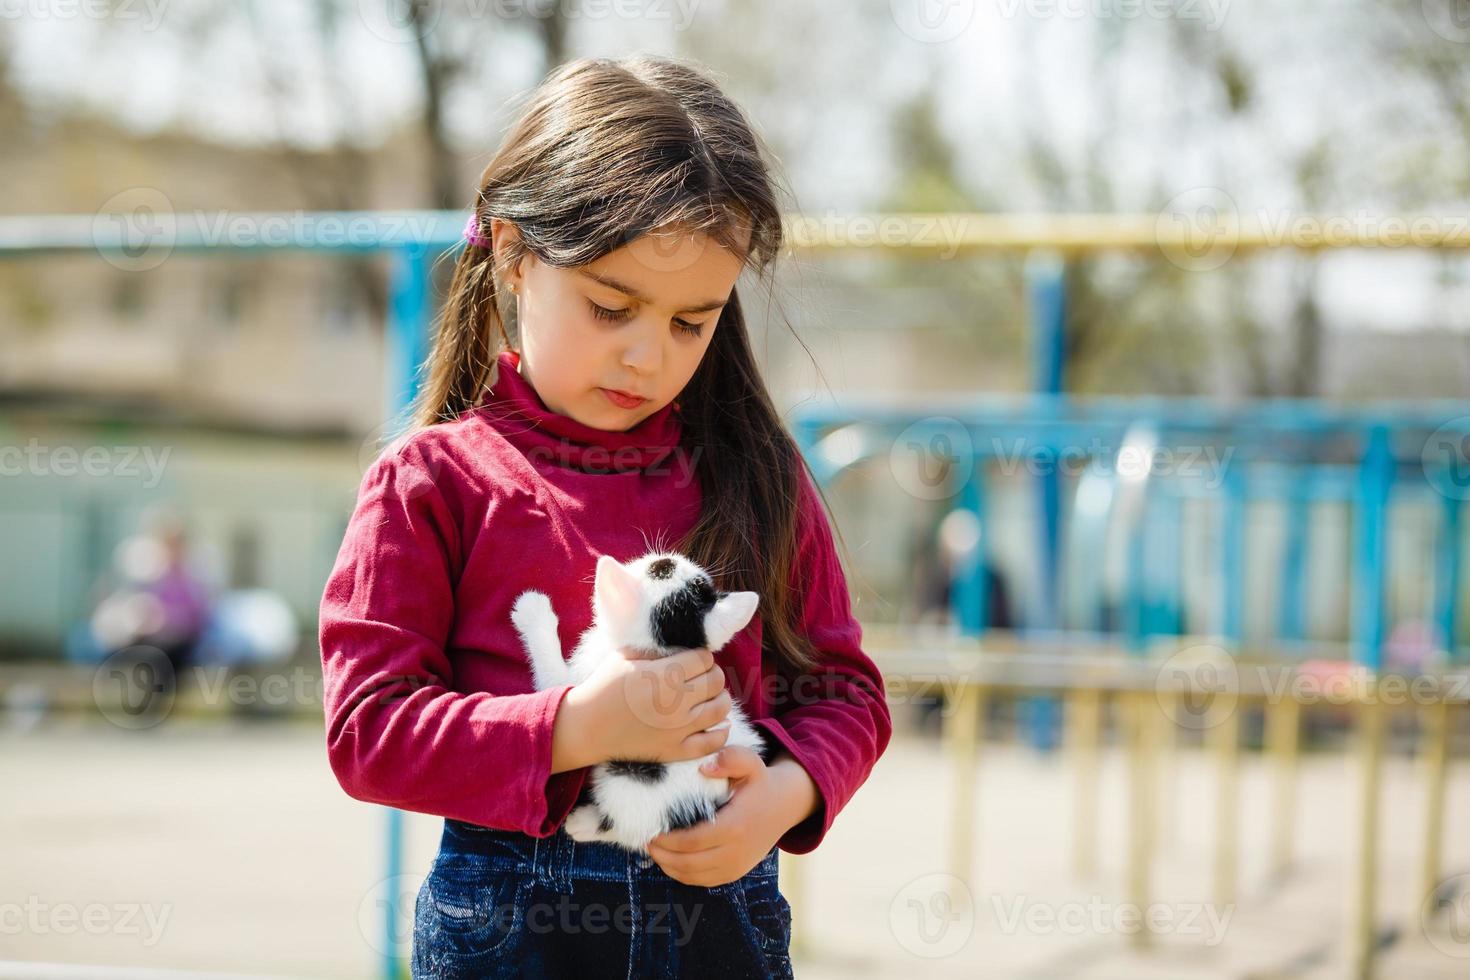 retrato ao ar livre de menina criança com gatinho pequeno, menina brincando com gato em fundo natural foto